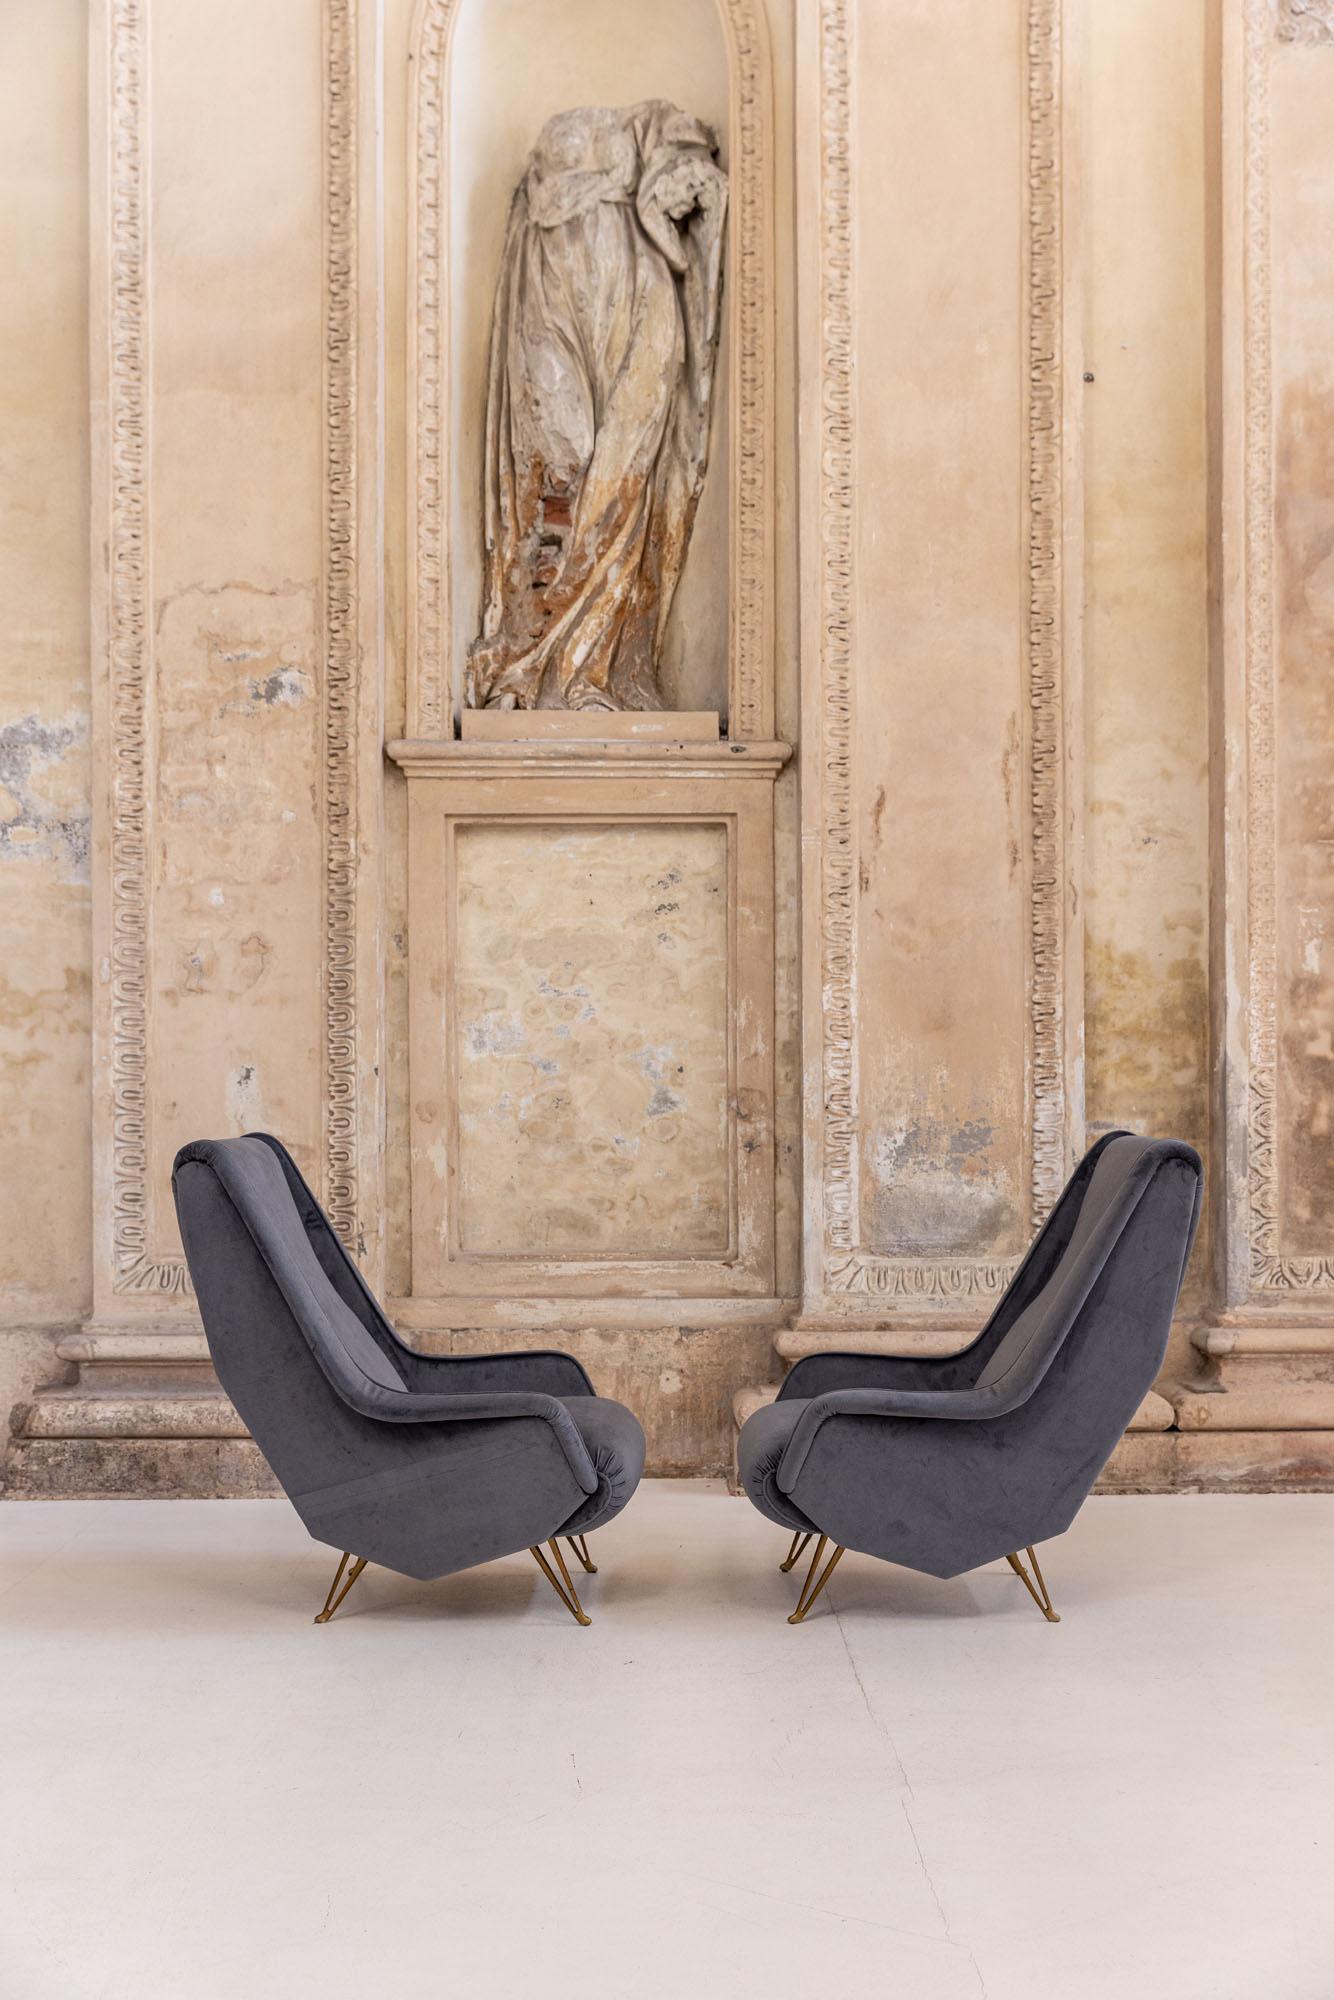 Wunderschönes Paar ISA Bergamo Sessel, Italien 1950er Jahre.
Original geformte Füße, die Gio Ponti zugeschrieben werden.
Das Modell ist dank der hohen Rückenlehne und des Designs besonders bequem. 
Neu gepolstert mit blauem Samt.